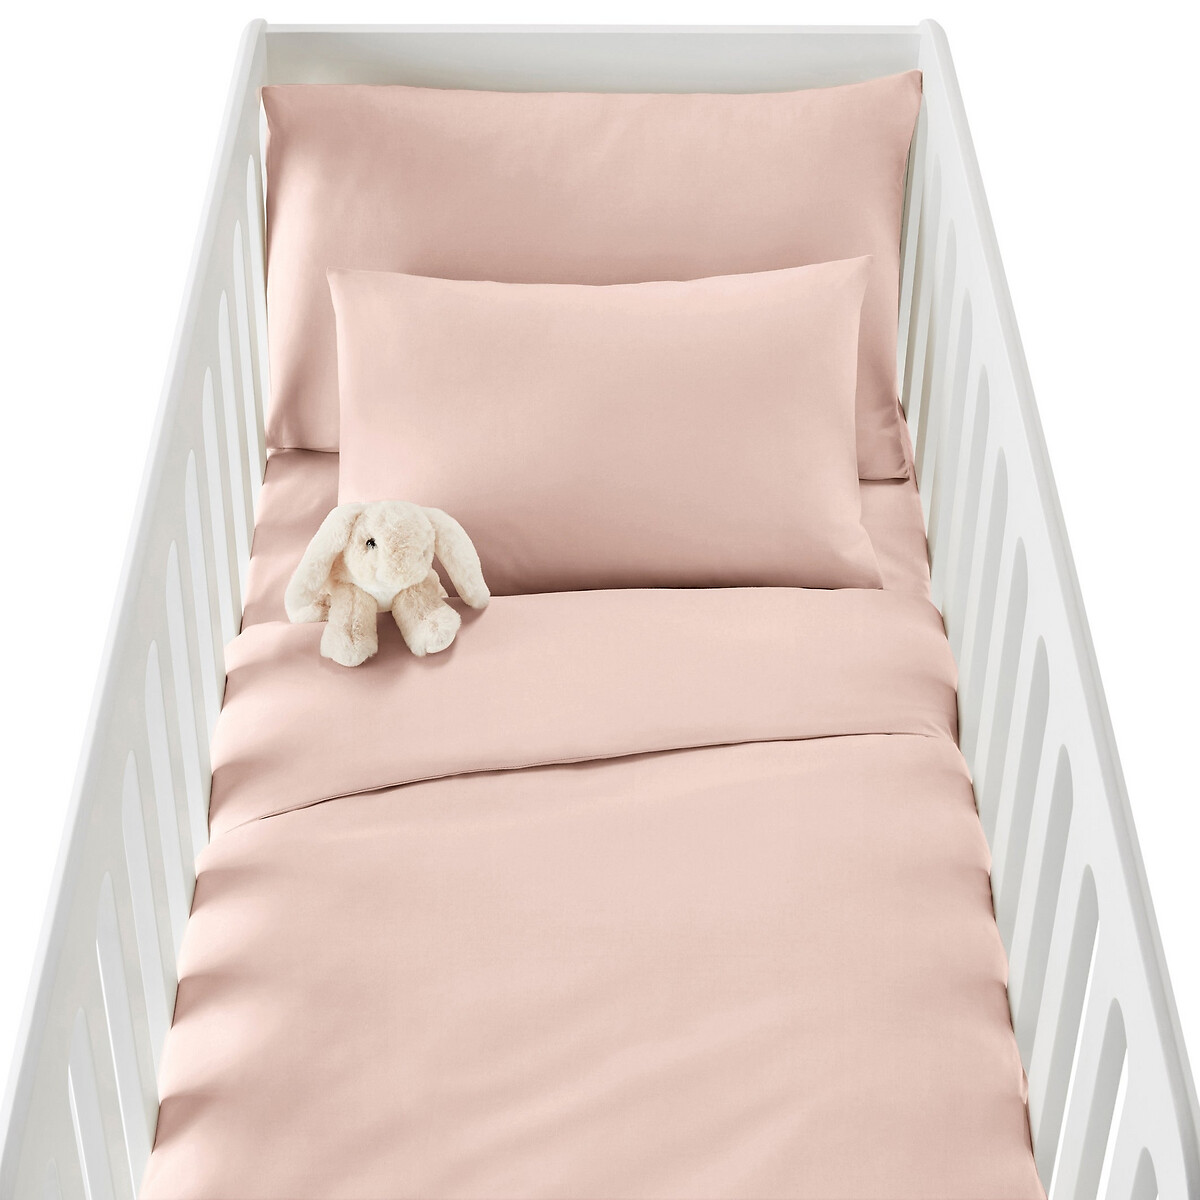 Простыня LaRedoute Натяжная для кровати грудного ребенка из биохлопка SCENARIO 70 x 140 см розовый, размер 70 x 140 см - фото 2